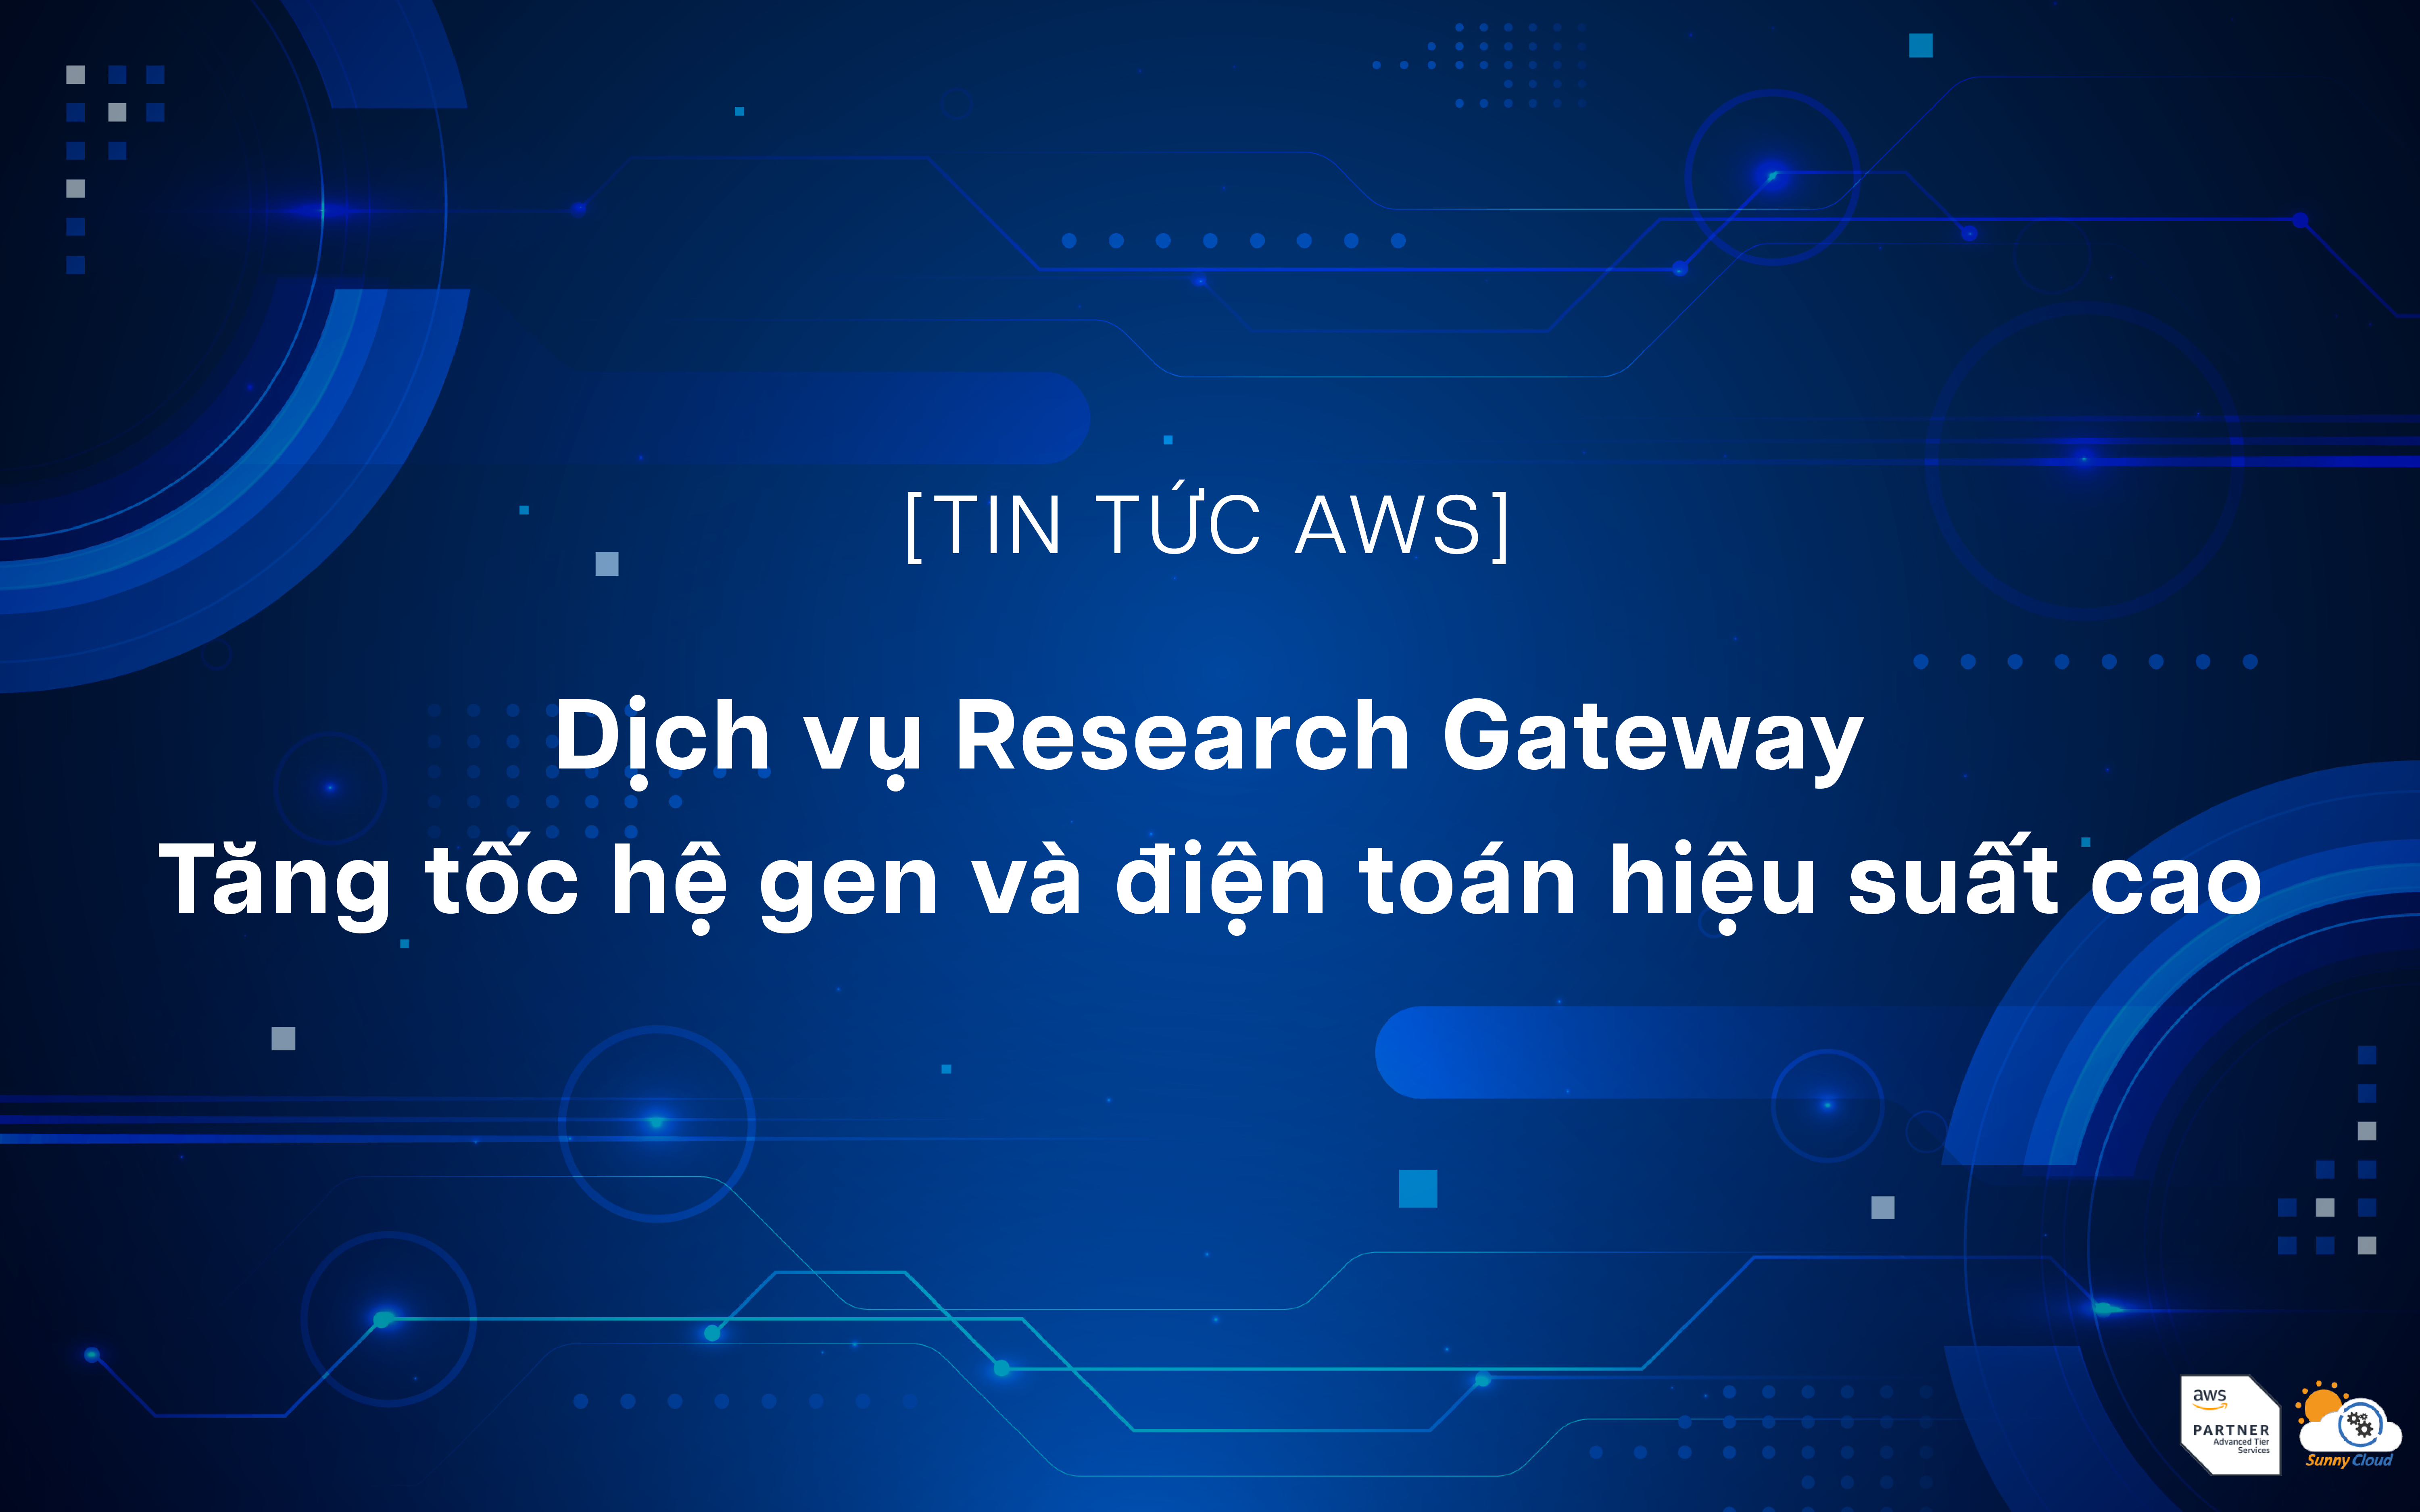 Dịch vụ Research Gateway – Tăng tốc hệ gen và điện toán hiệu suất cao